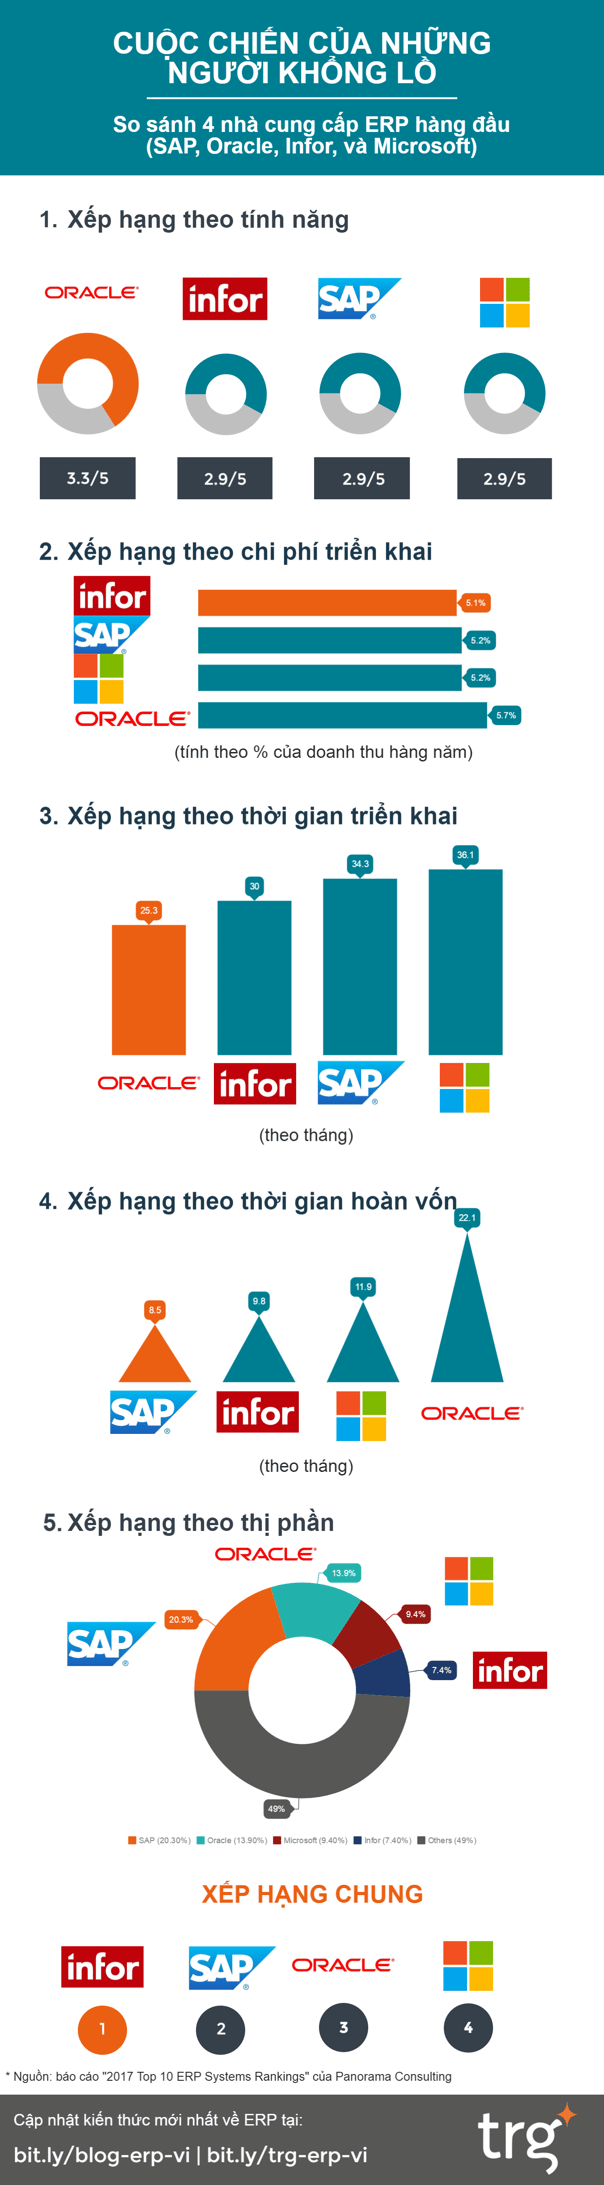 so sánh 4 nhà cung cấp phần mềm ERP: SAP, Oracle, Microsoft, Infor. 